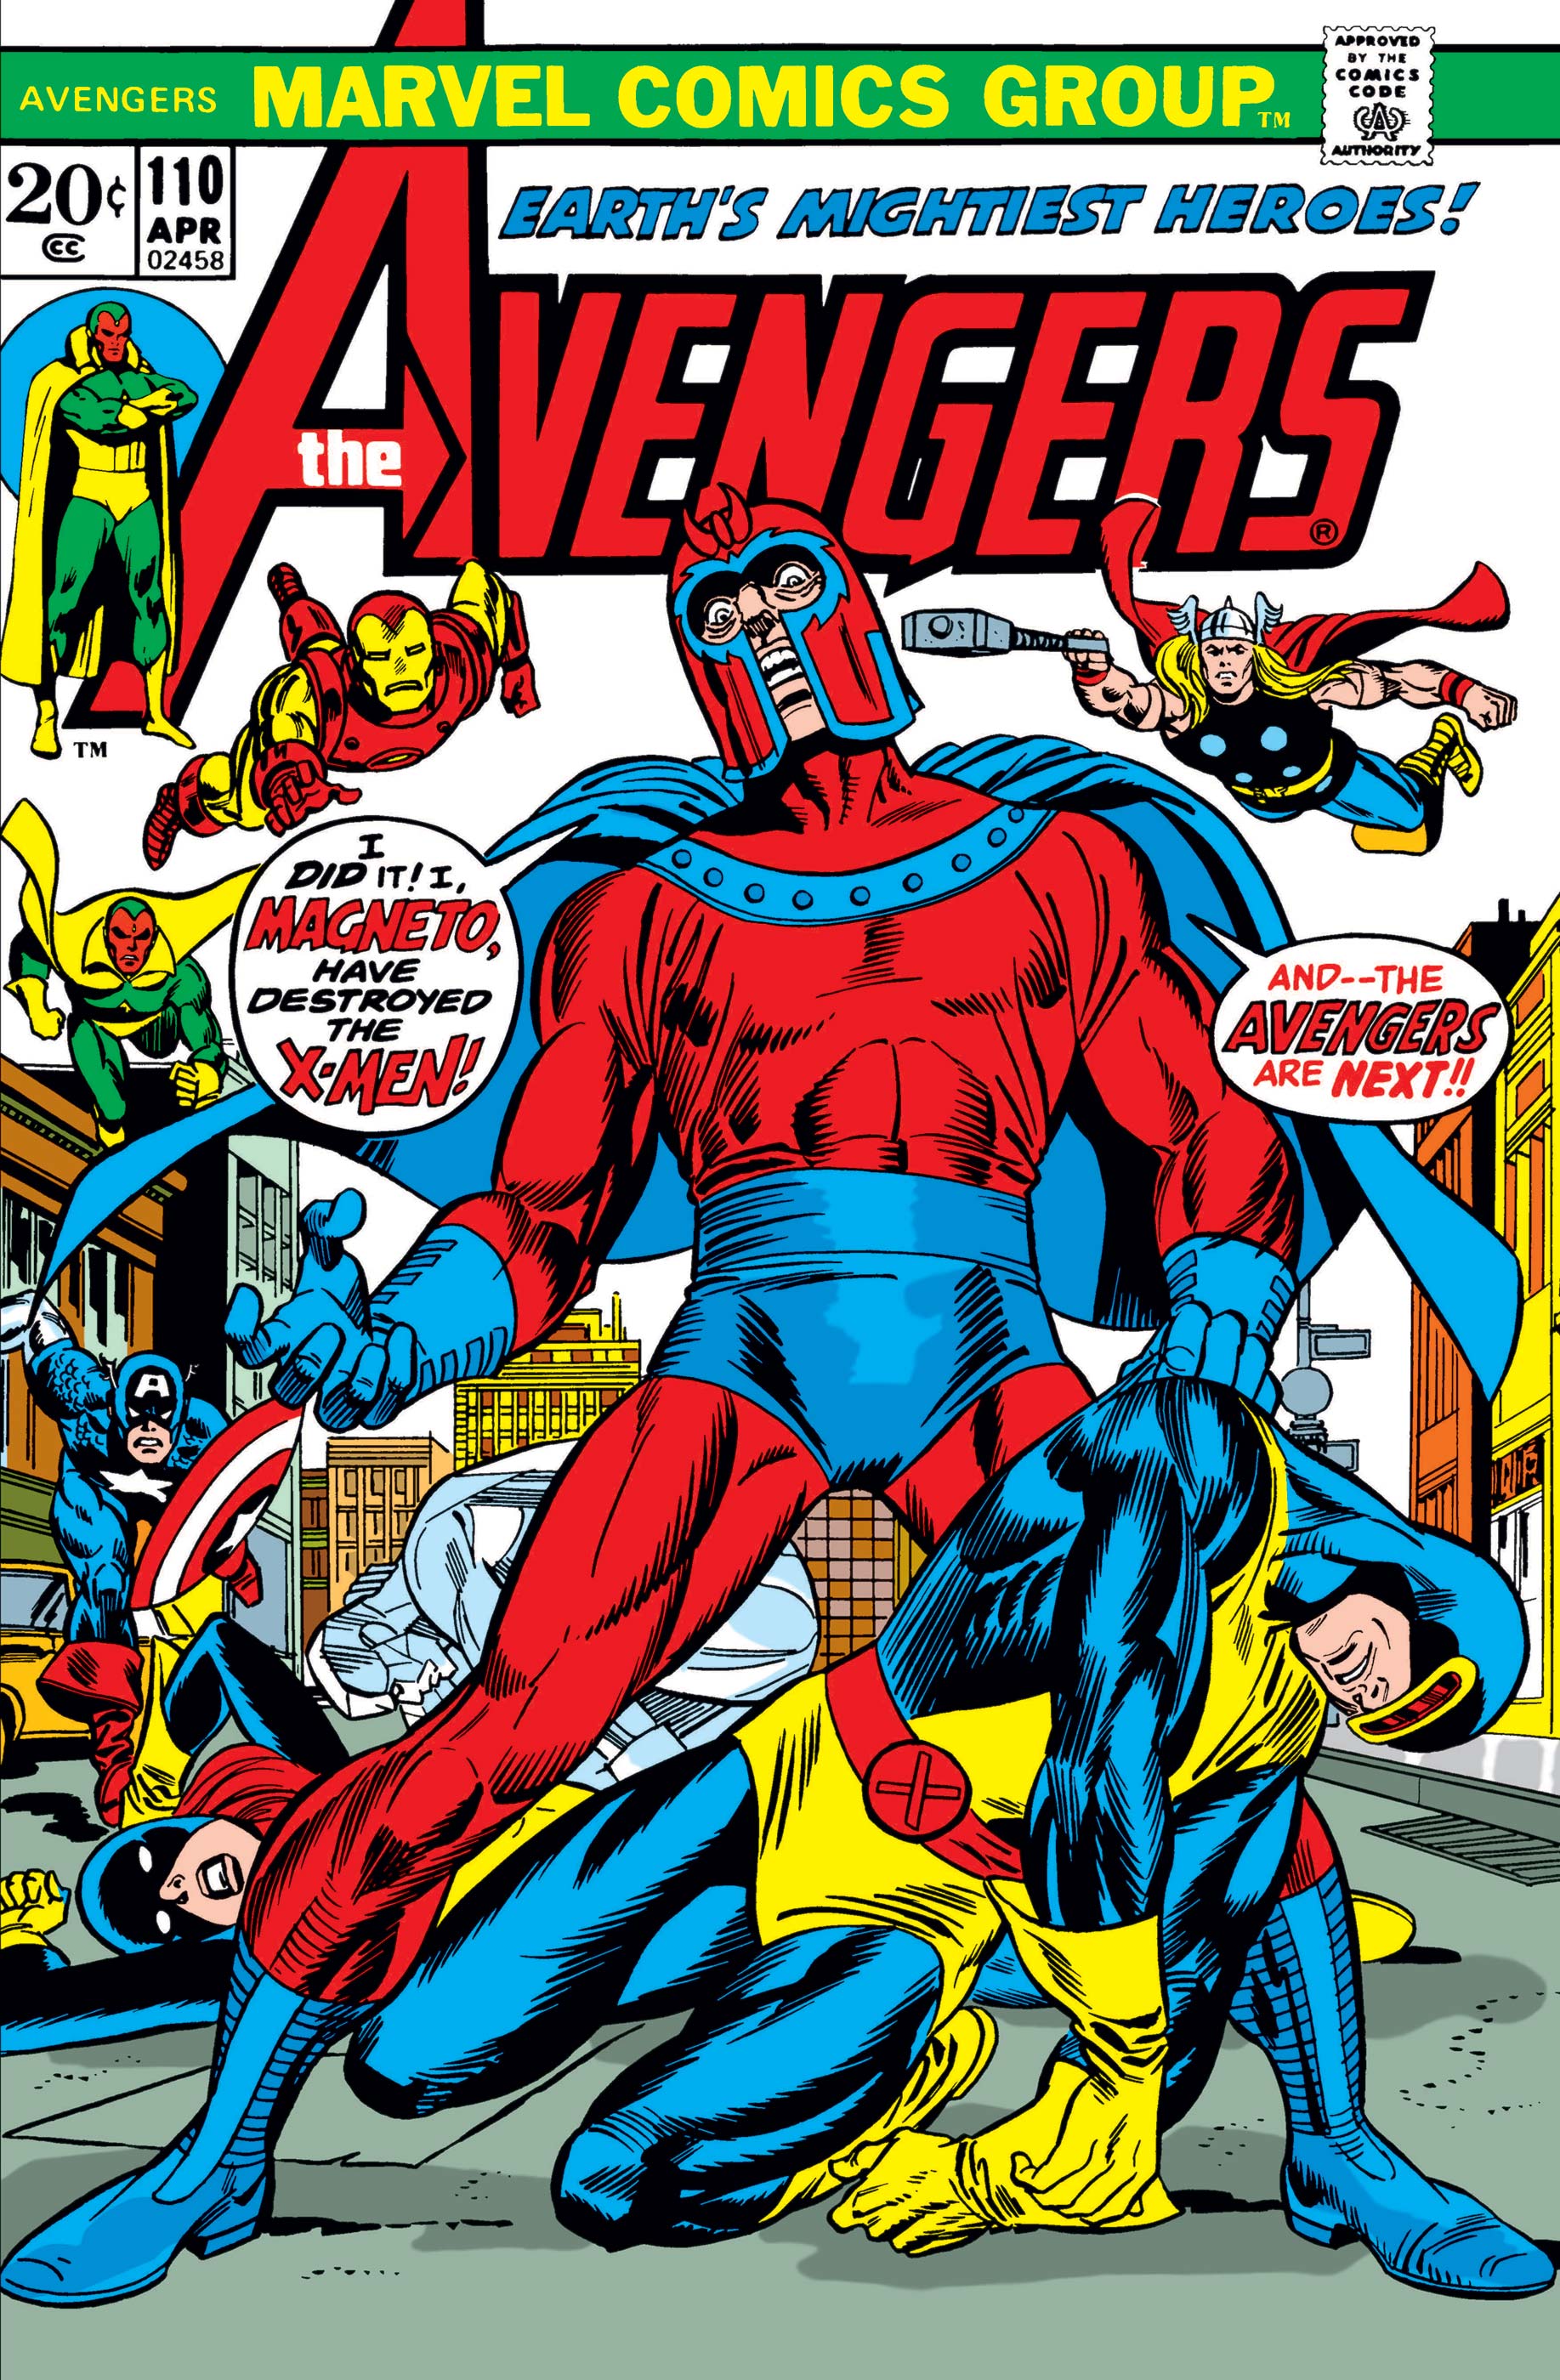 Avengers (1963) #110 | Comic Issues | Marvel